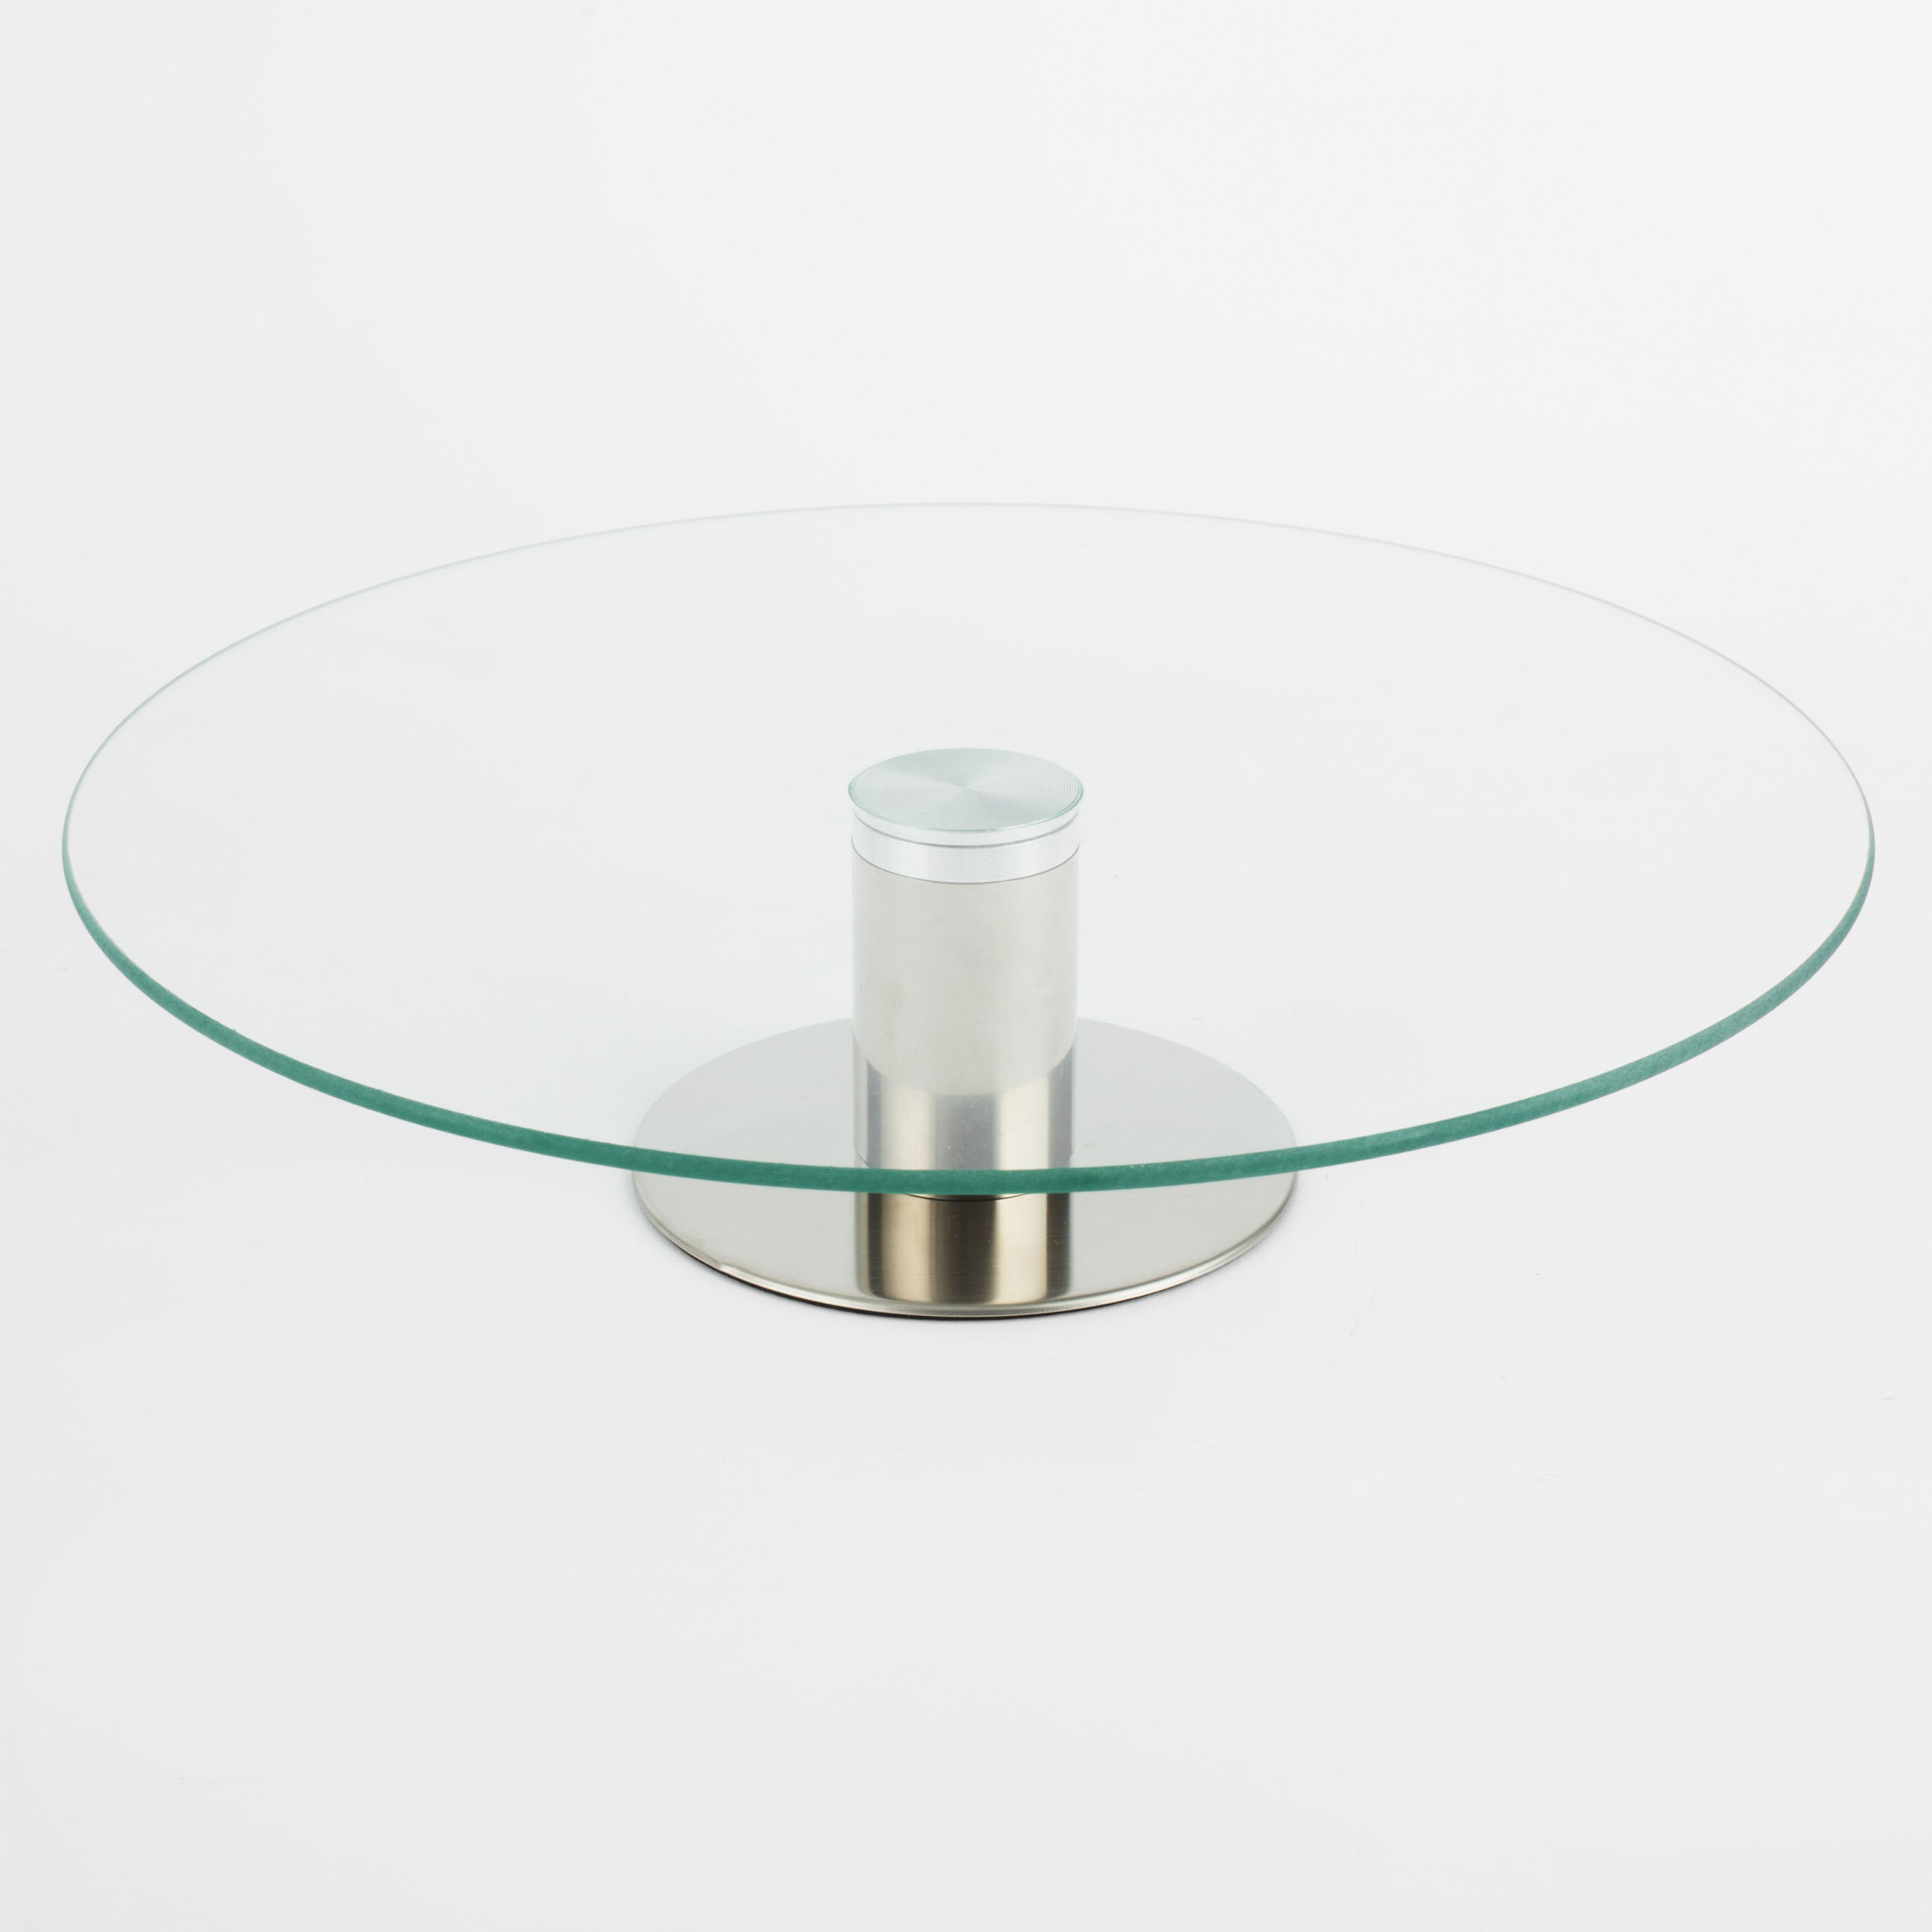 Dish on a leg, 30x7 cm, glass / steel, Classic изображение № 2